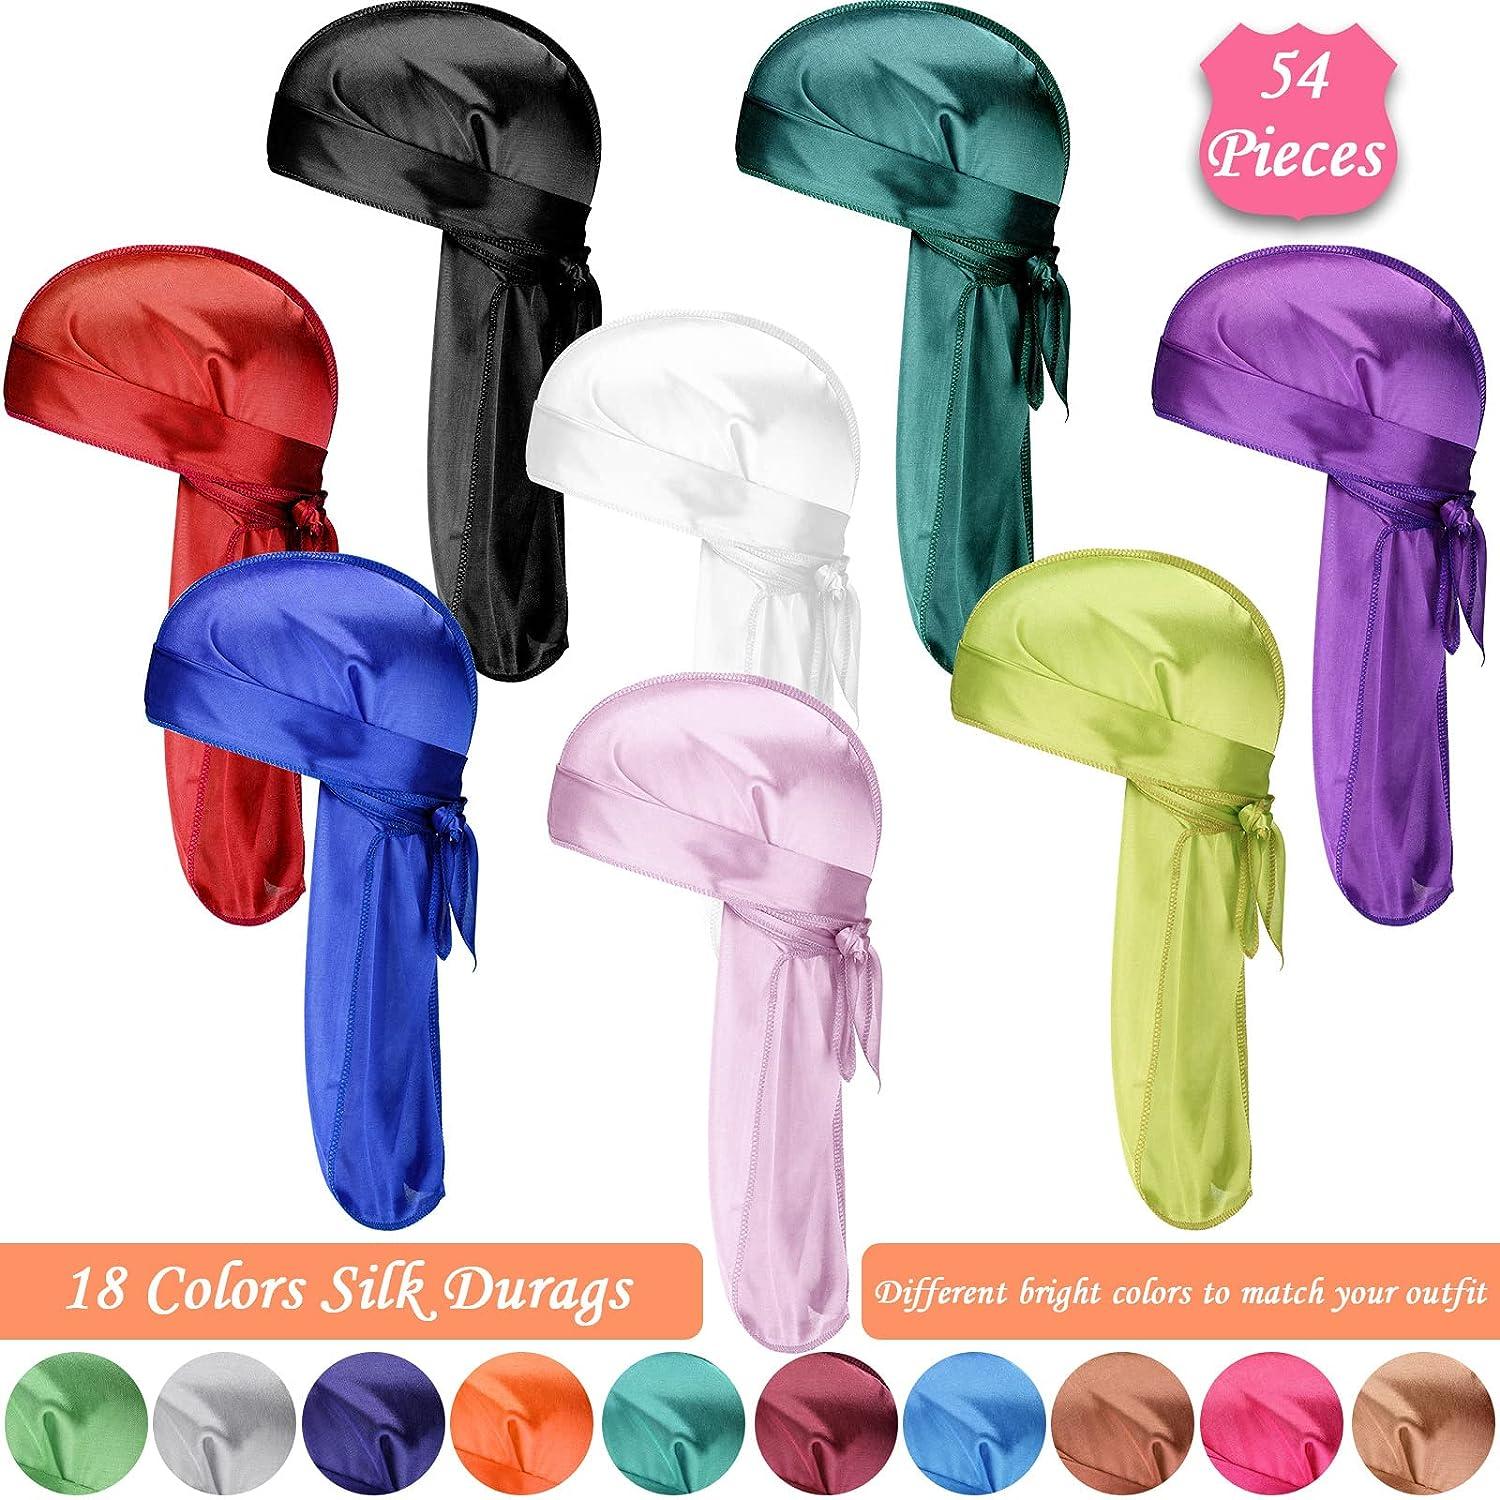 54 Pieces Silk Durags for Men Women 18 Colors Durags Wave Cap